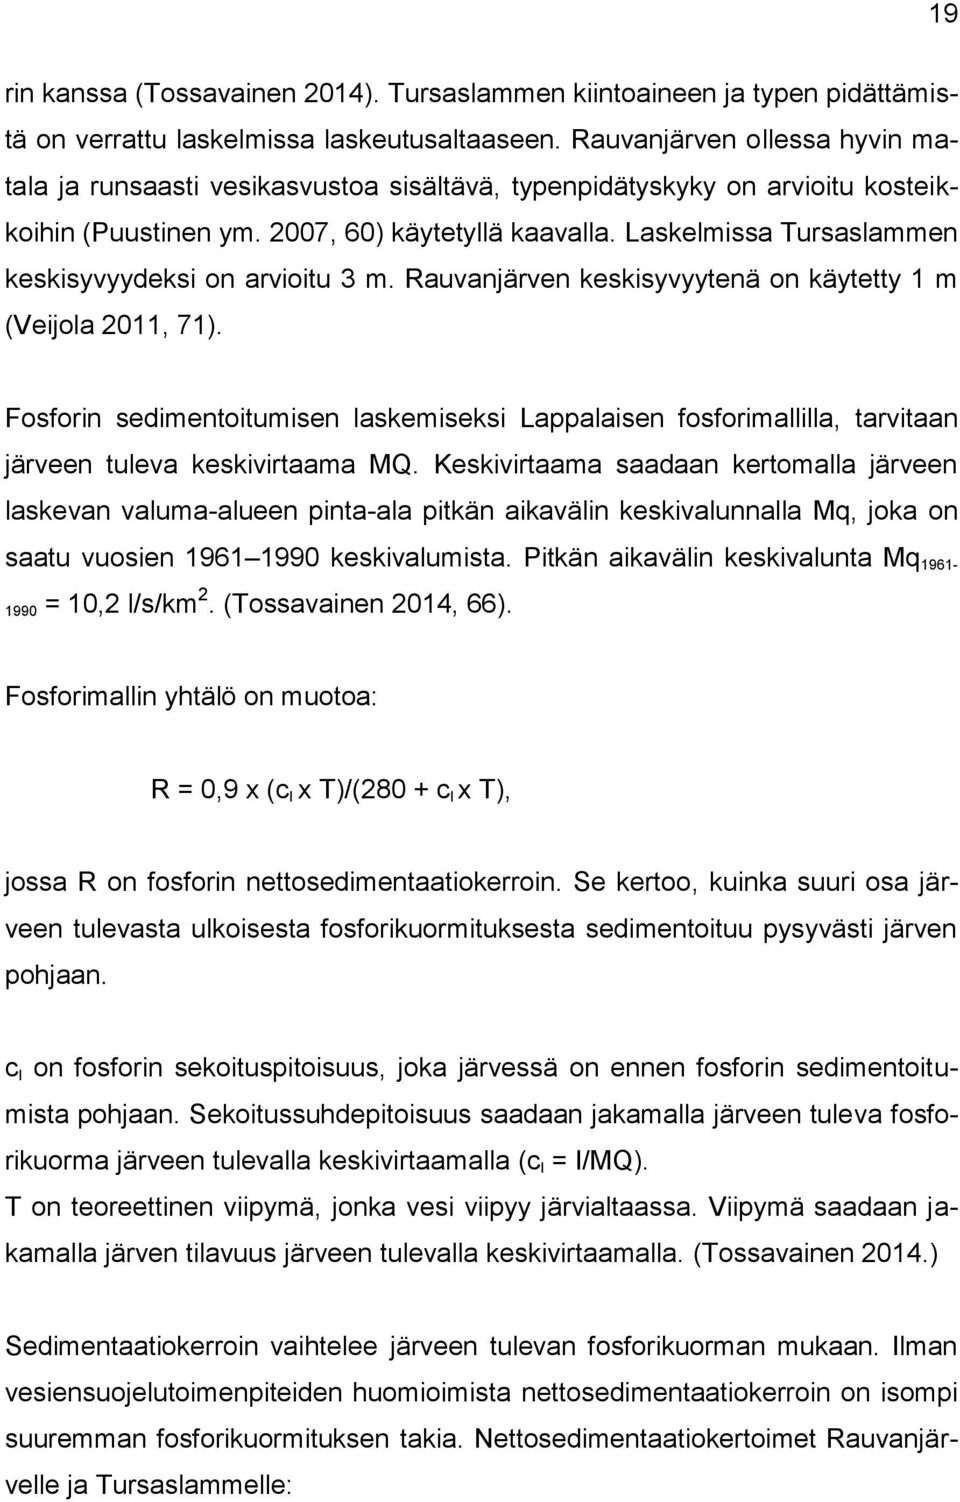 Laskelmissa Tursaslammen keskisyvyydeksi on arvioitu 3 m. Rauvanjärven keskisyvyytenä on käytetty 1 m (Veijola 2011, 71).